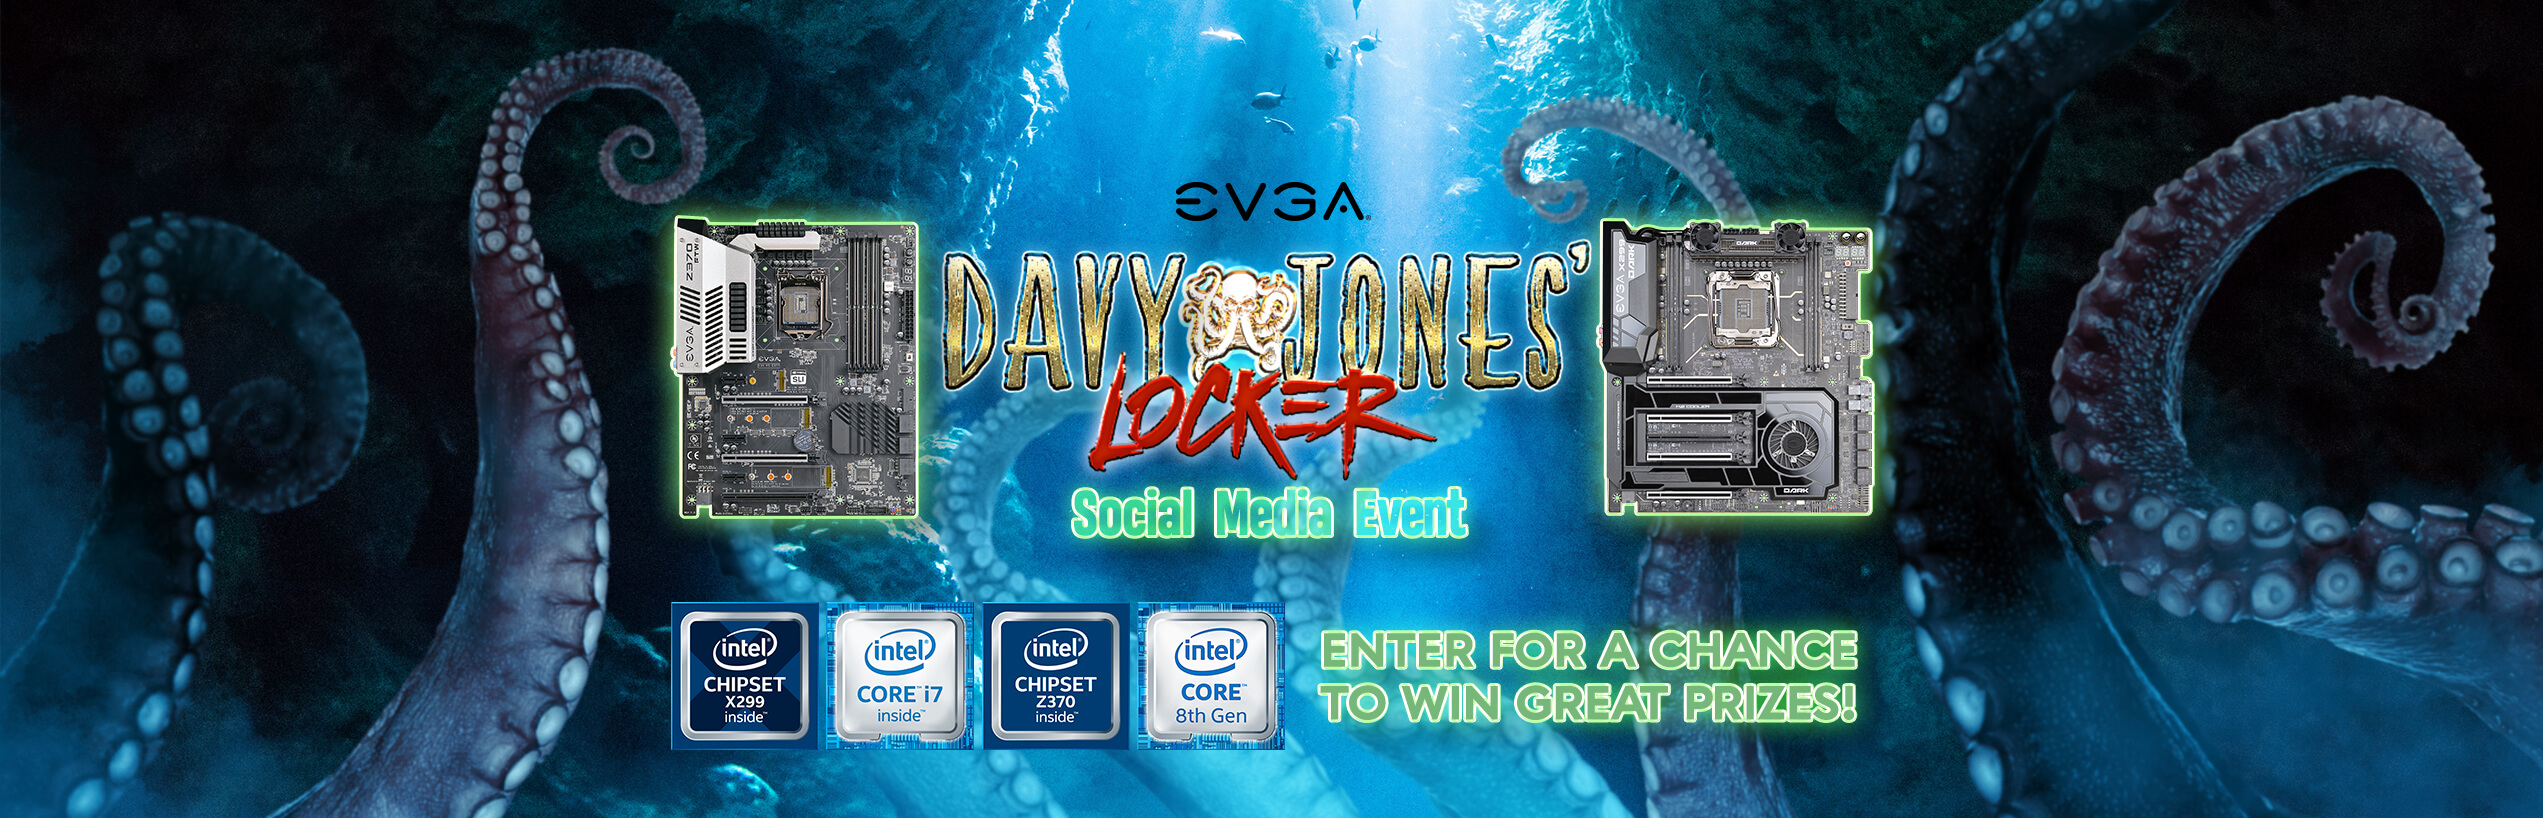 Davy Jones’ Social Media Event